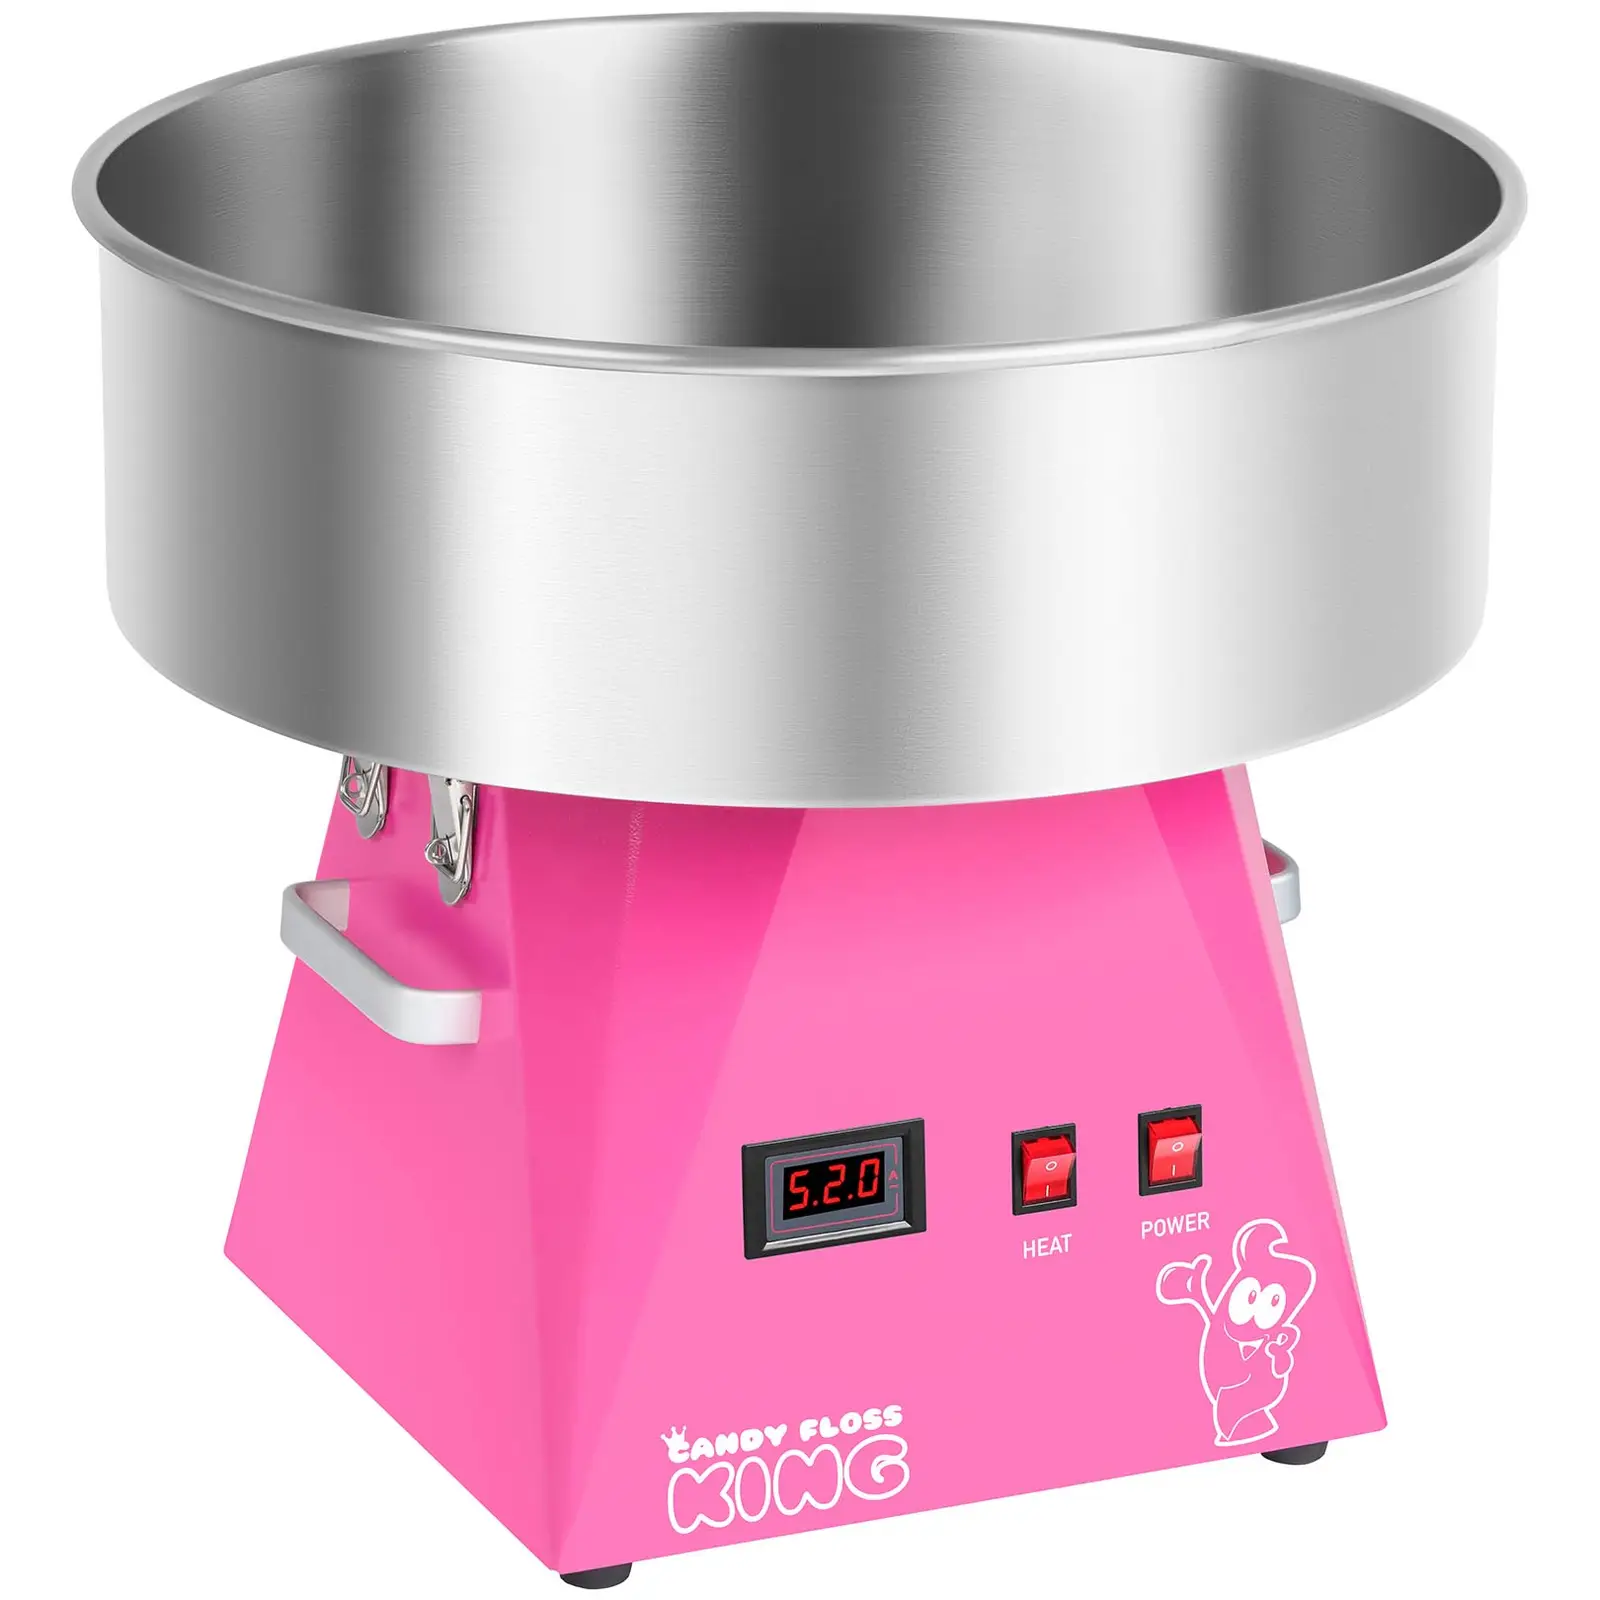 Vattacukor készítő gép készlet pálcikákkal - búrával - 52 cm - 1030 watt - pink